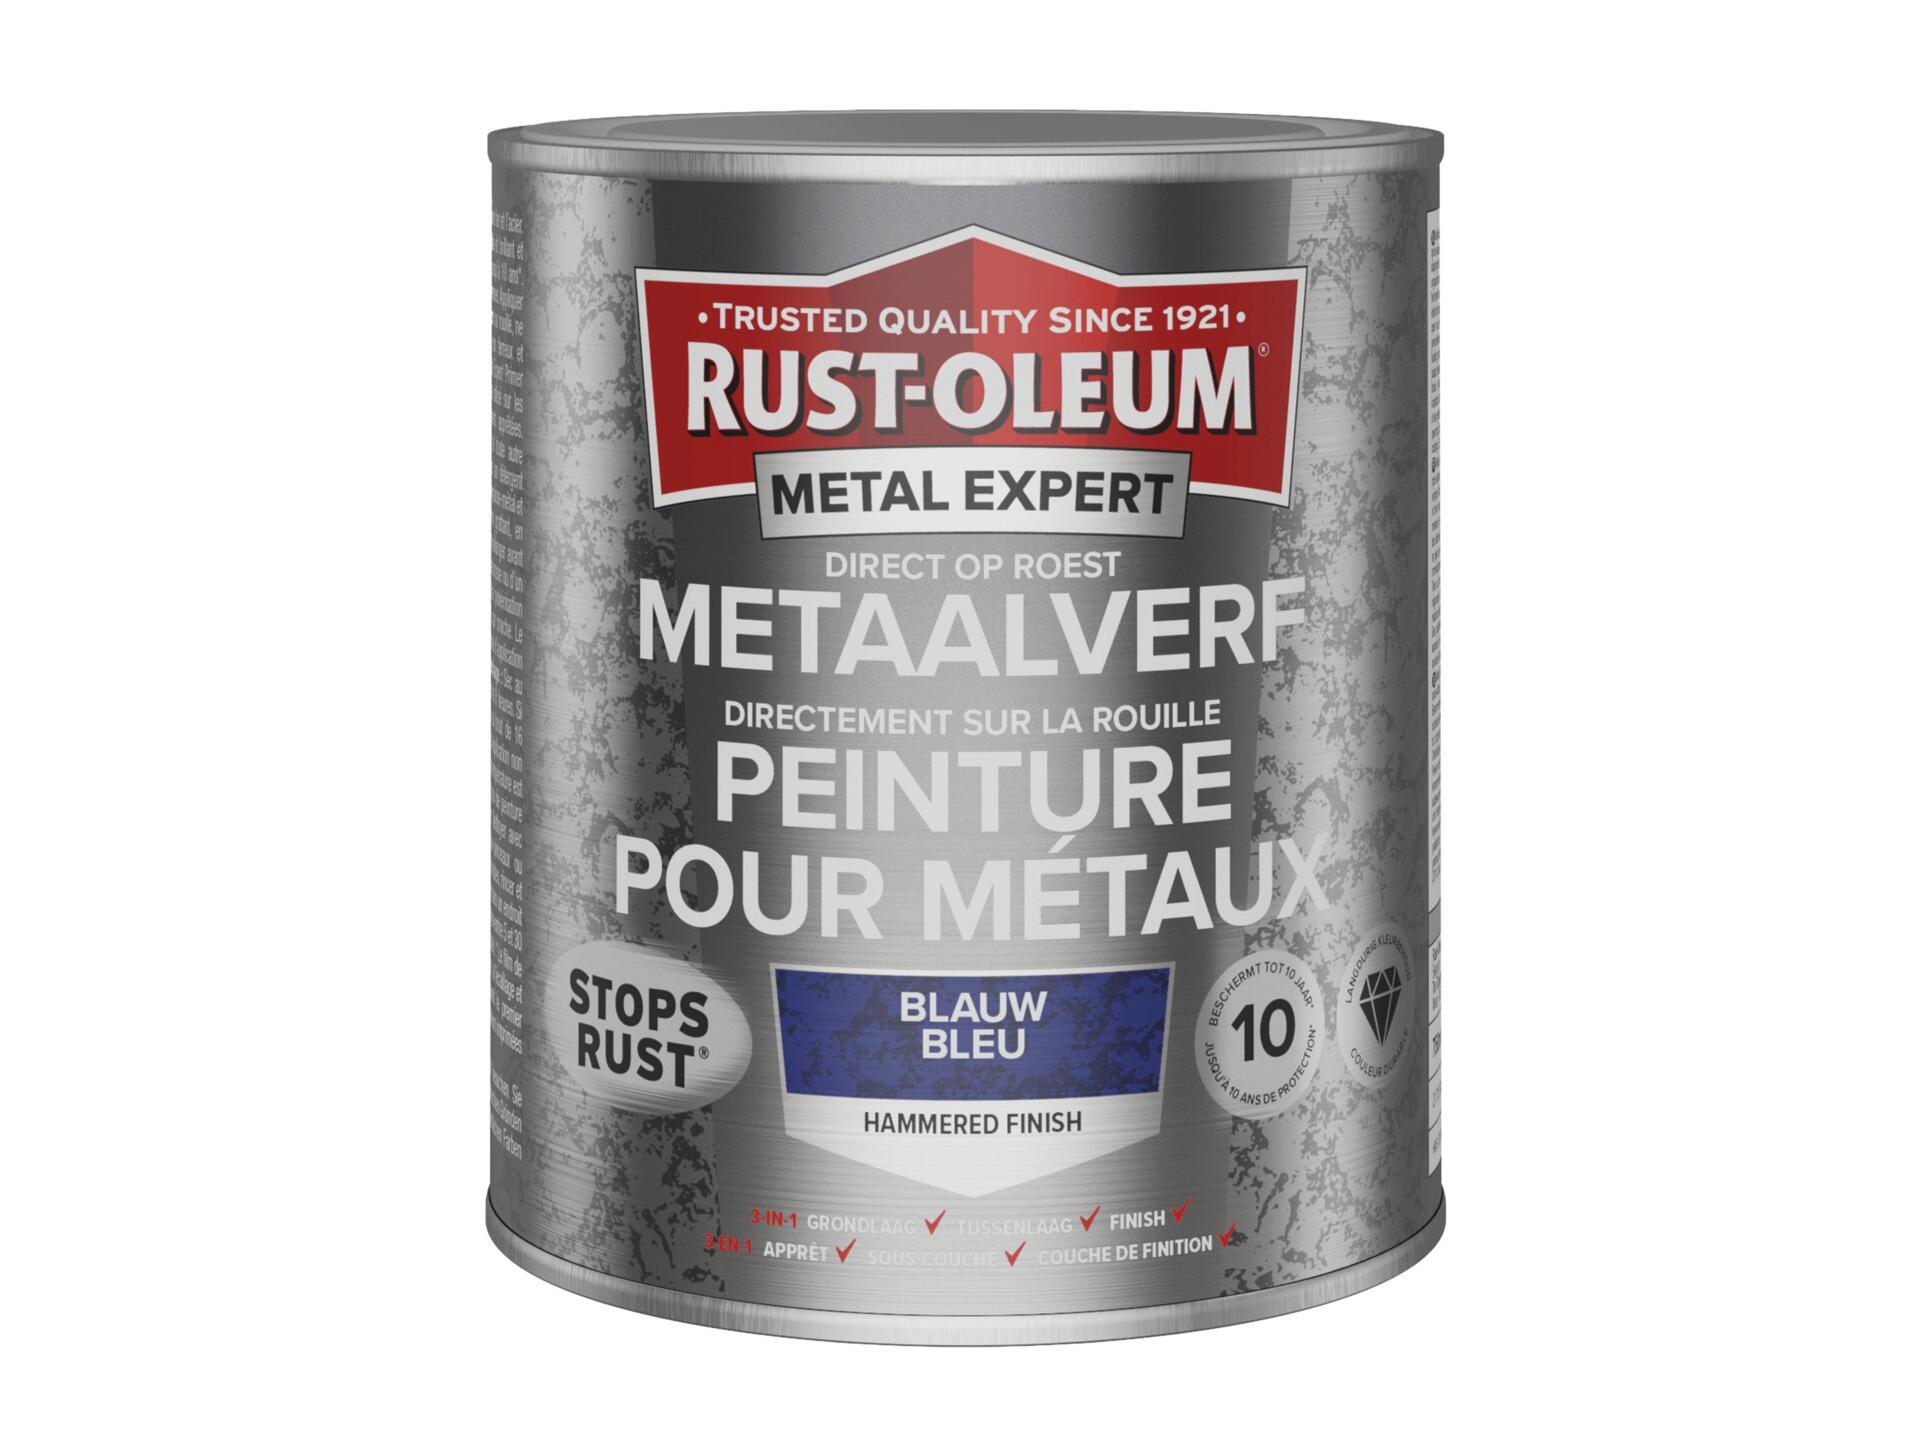 Rust-oleum Metal Expert peinture pour métaux martelé 750ml bleu